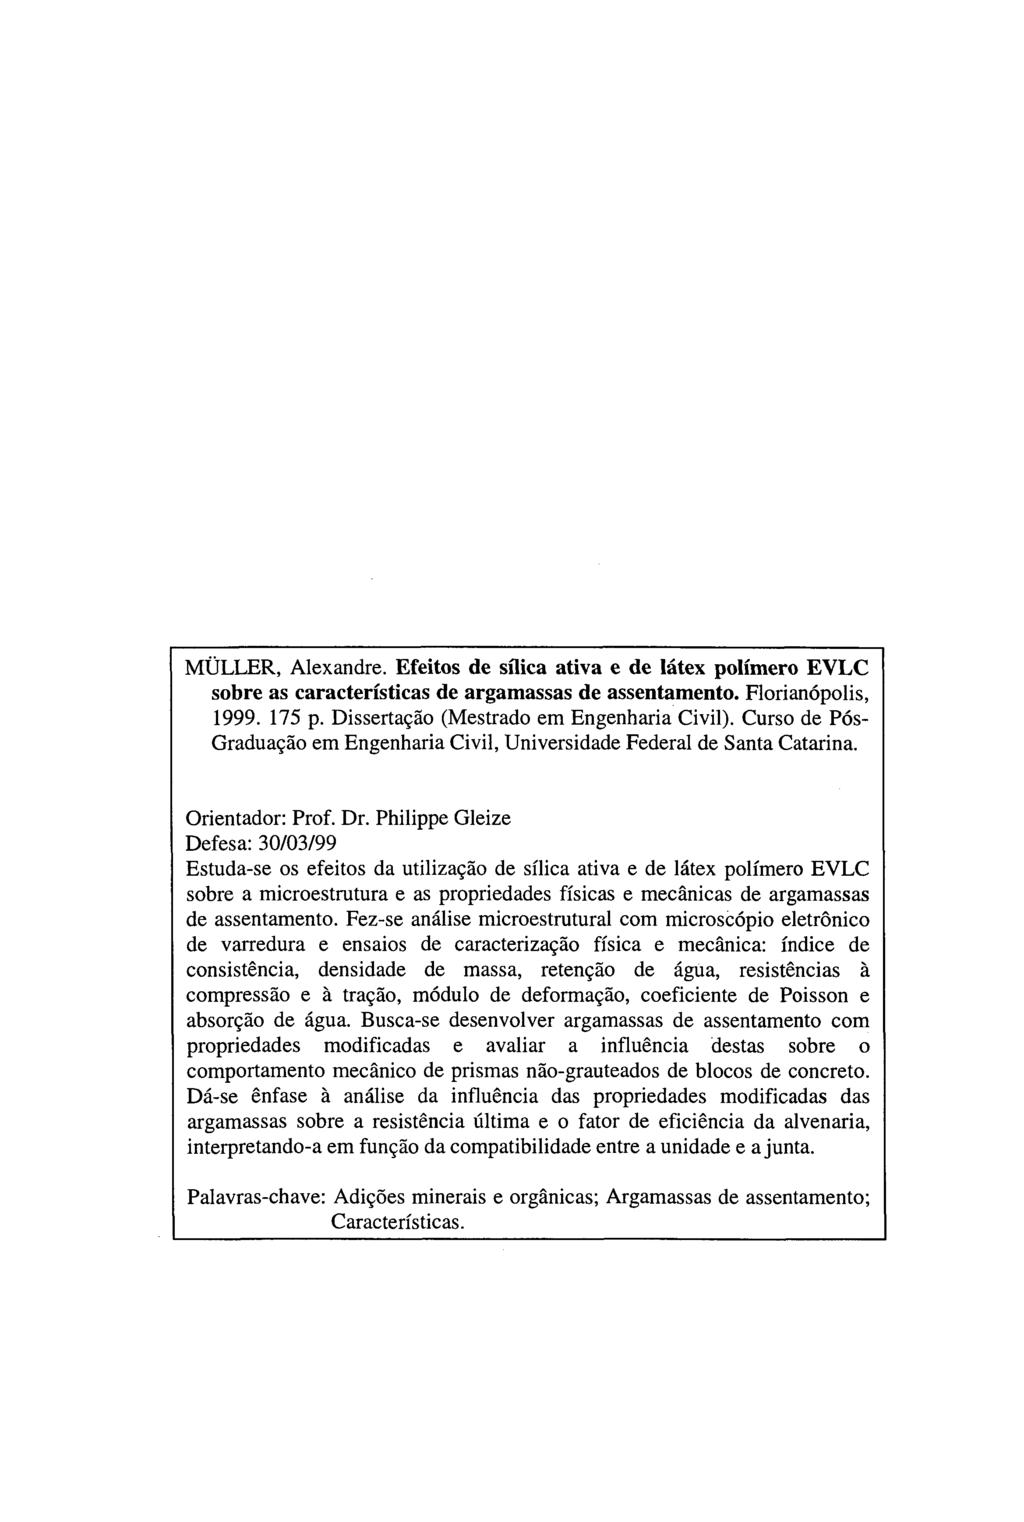 MÜLLER, Alexandre. Efeitos de sílica ativa e de látex polímero EVLC sobre as características de argamassas de assentamento. Florianópolis, 1999. 175 p. Dissertação (Mestrado em Engenharia Civil).